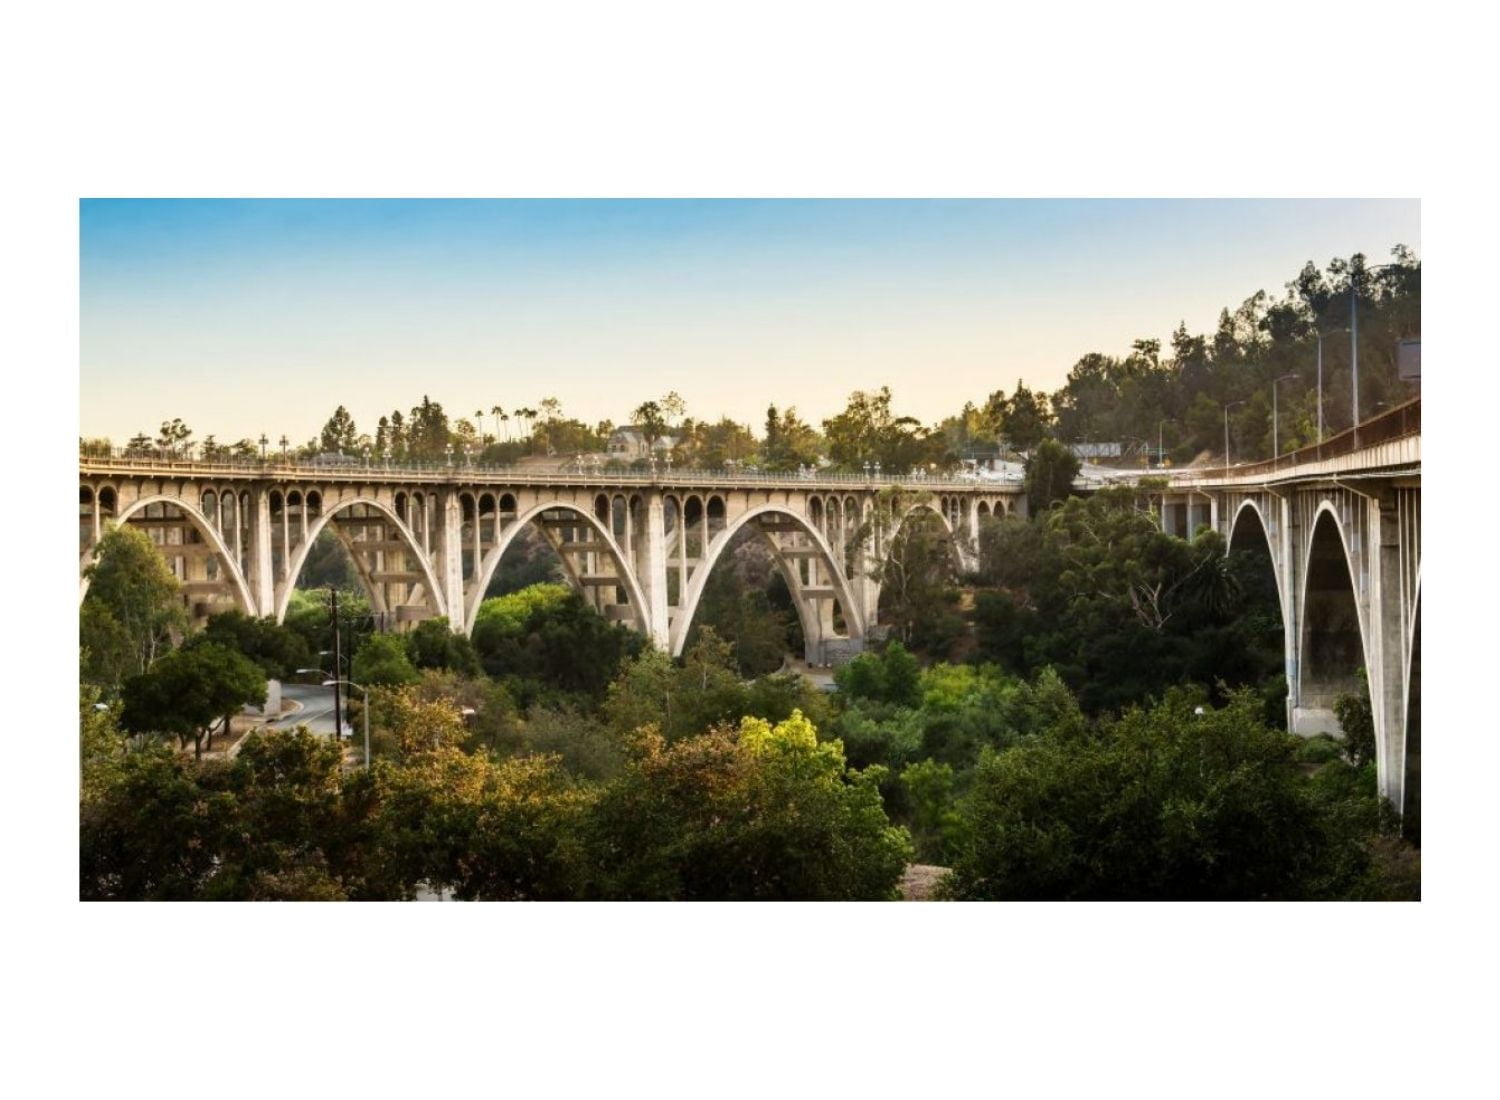 The suicide bridge of California